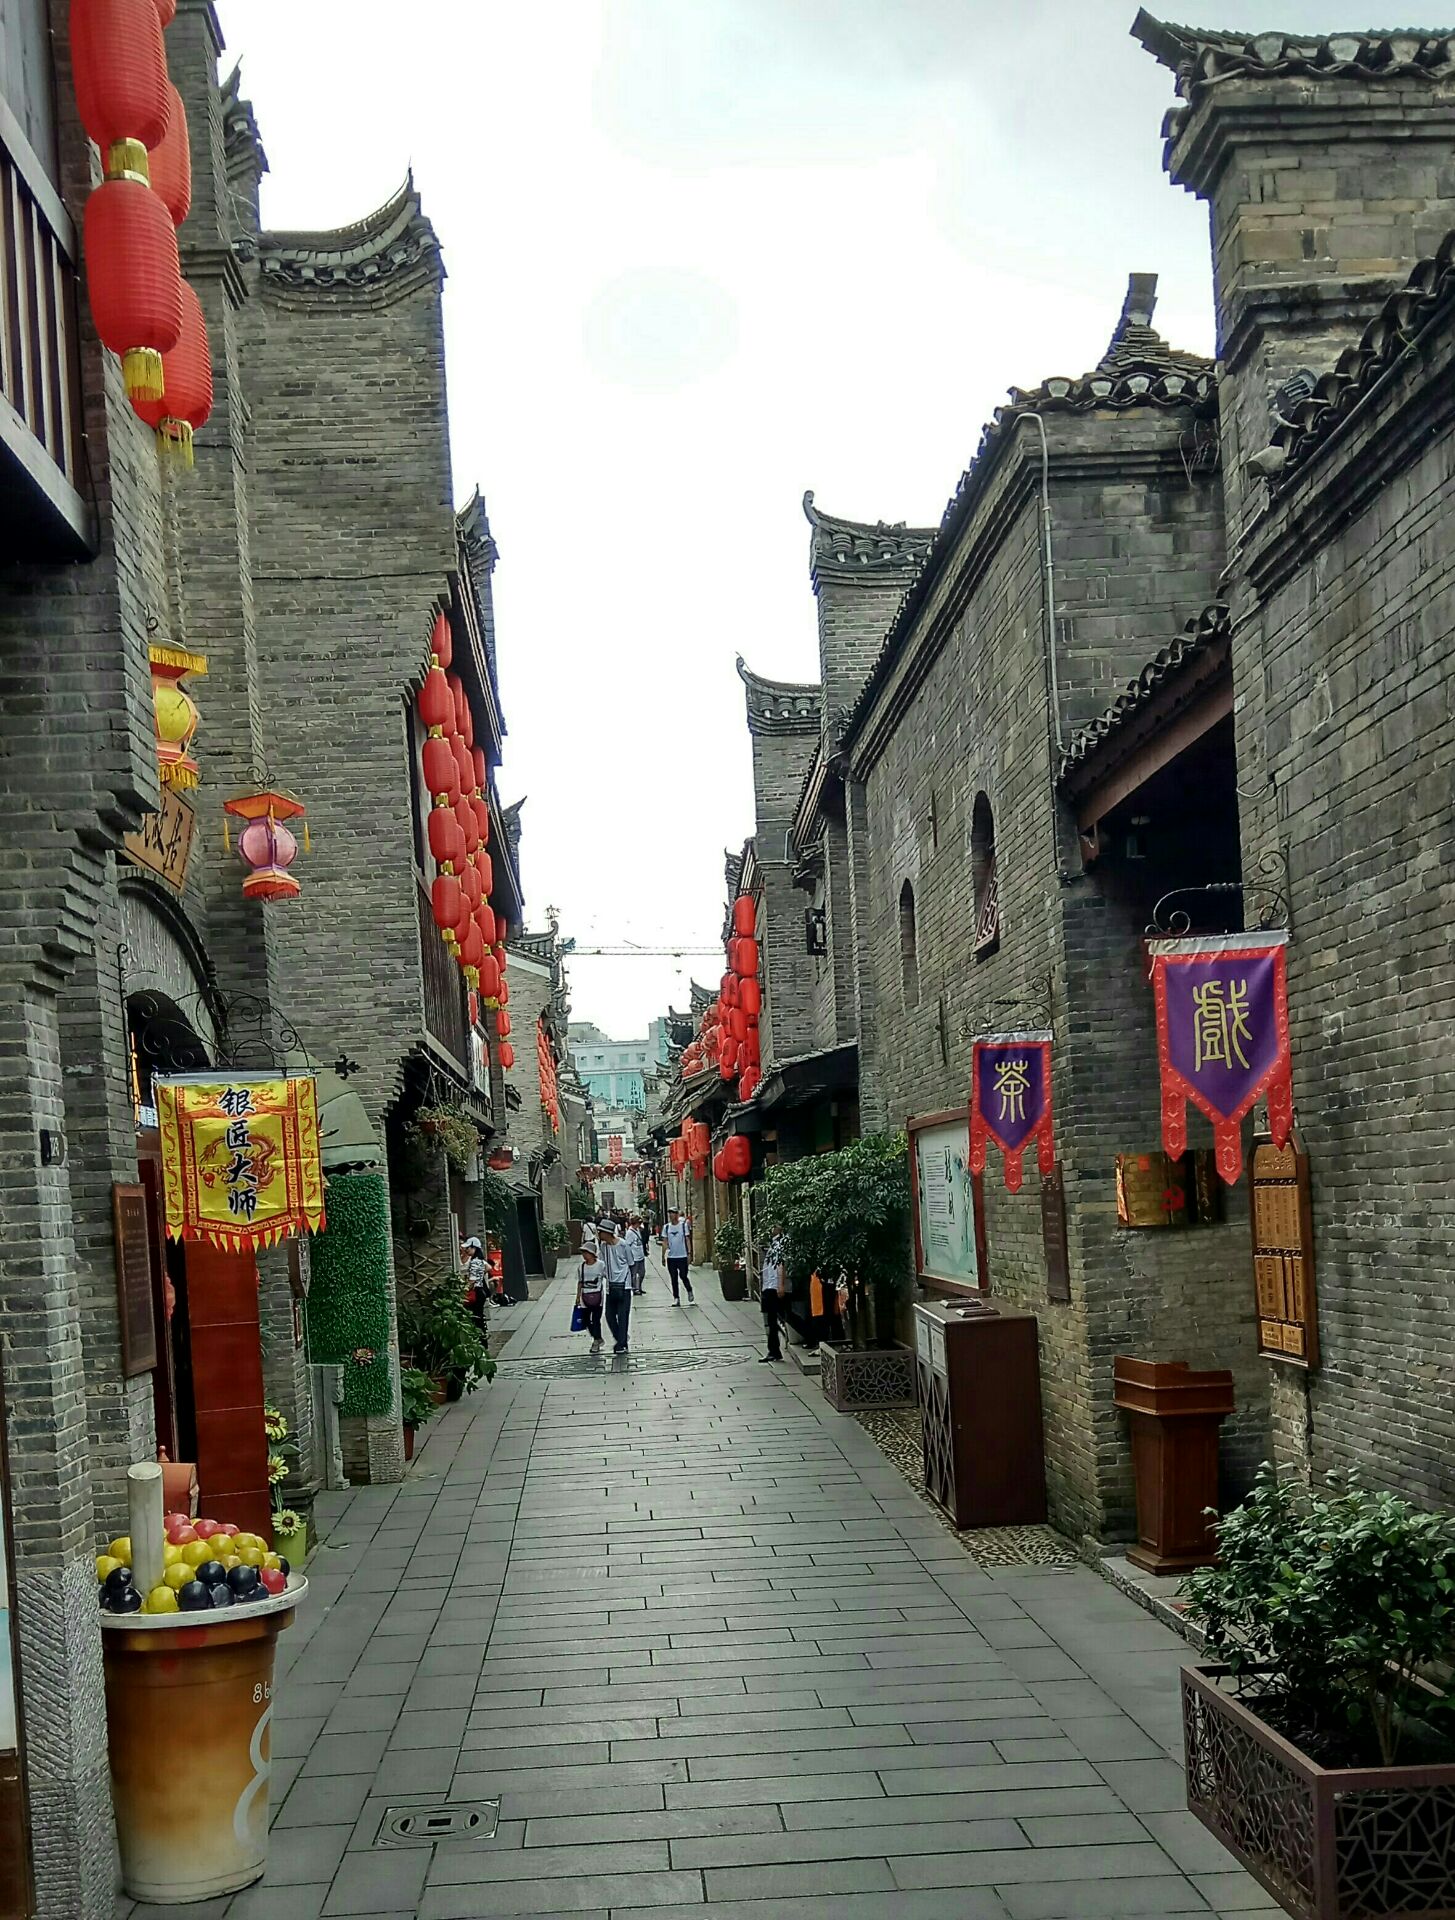 【携程攻略】桂林东西巷景点,东西巷位于靖江王城正阳门前,是桂林历史